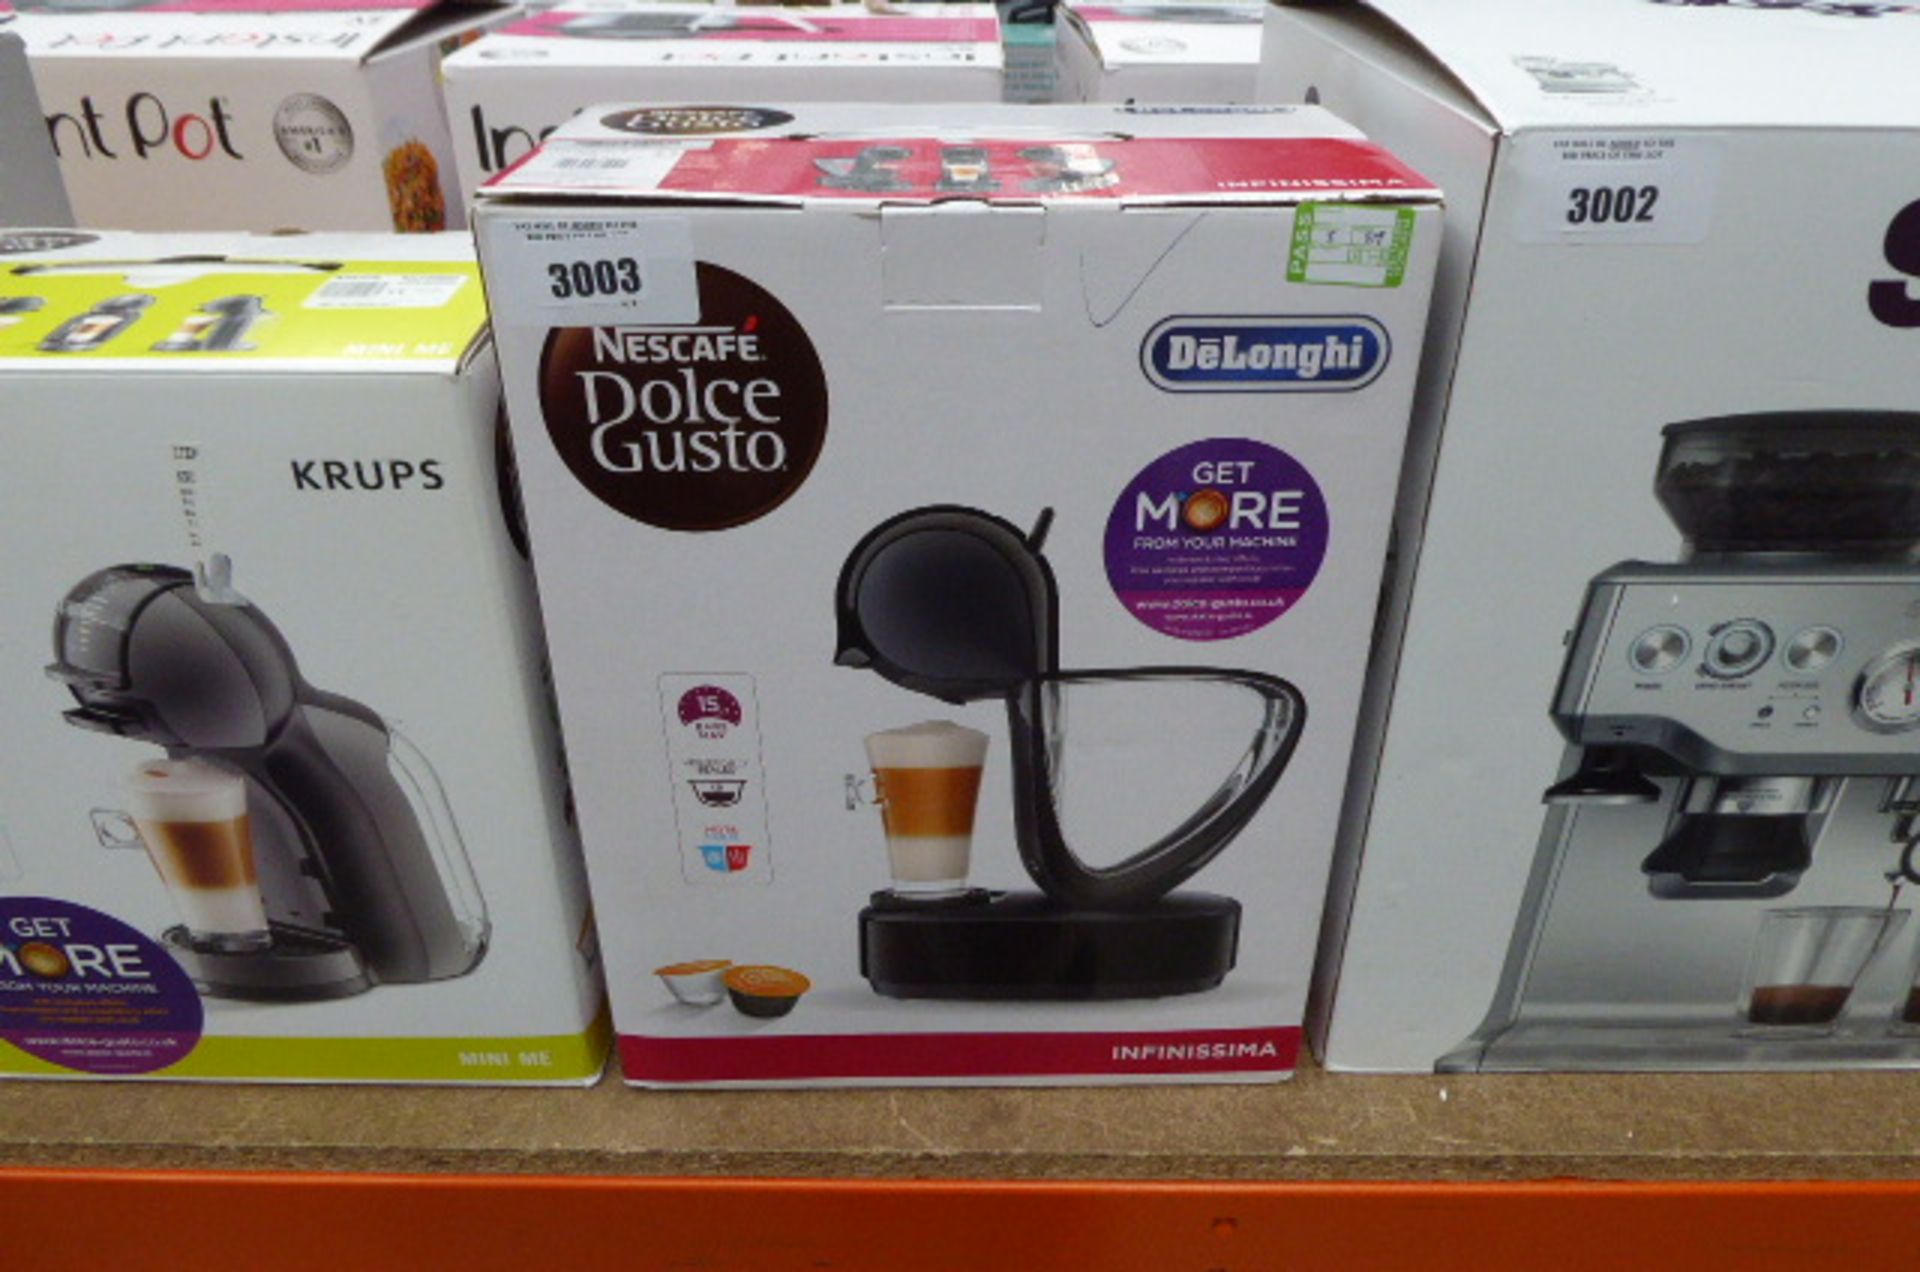 Boxed Nescafe Dulce Gusto coffee dispenser